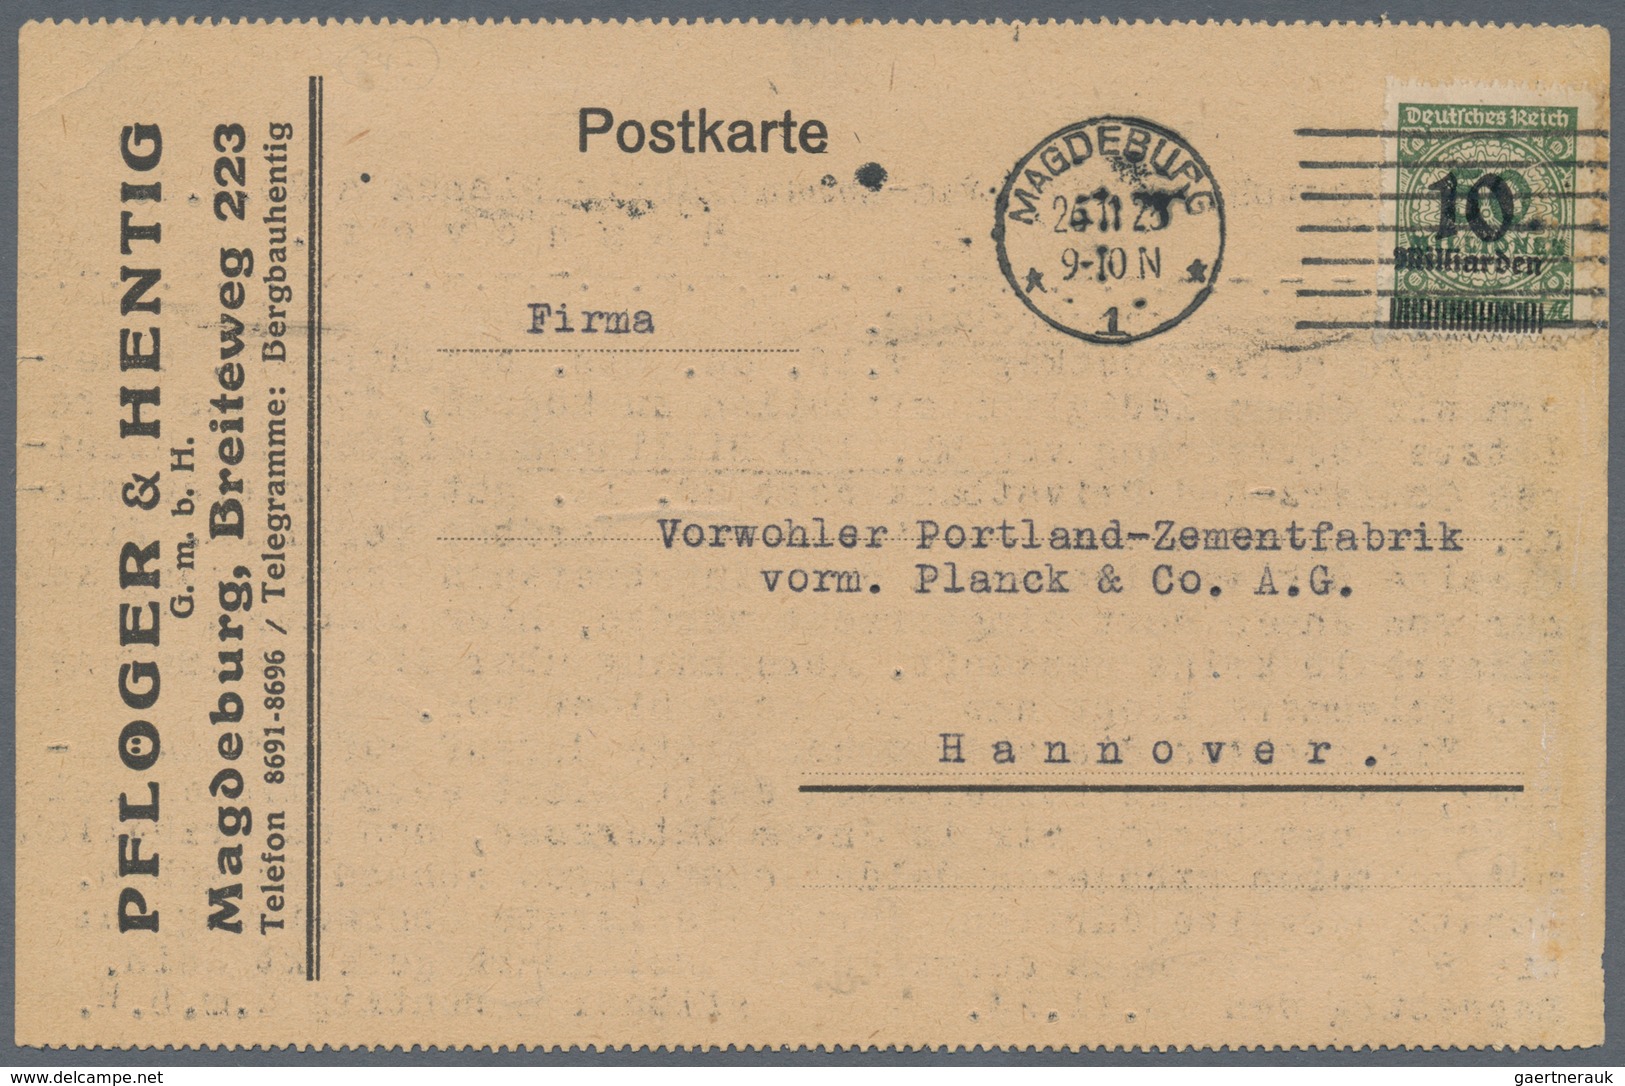 Deutsches Reich - Inflation: 1919/1923, vielseitiger Bestand von ca. 780 Briefen und Karten in guter